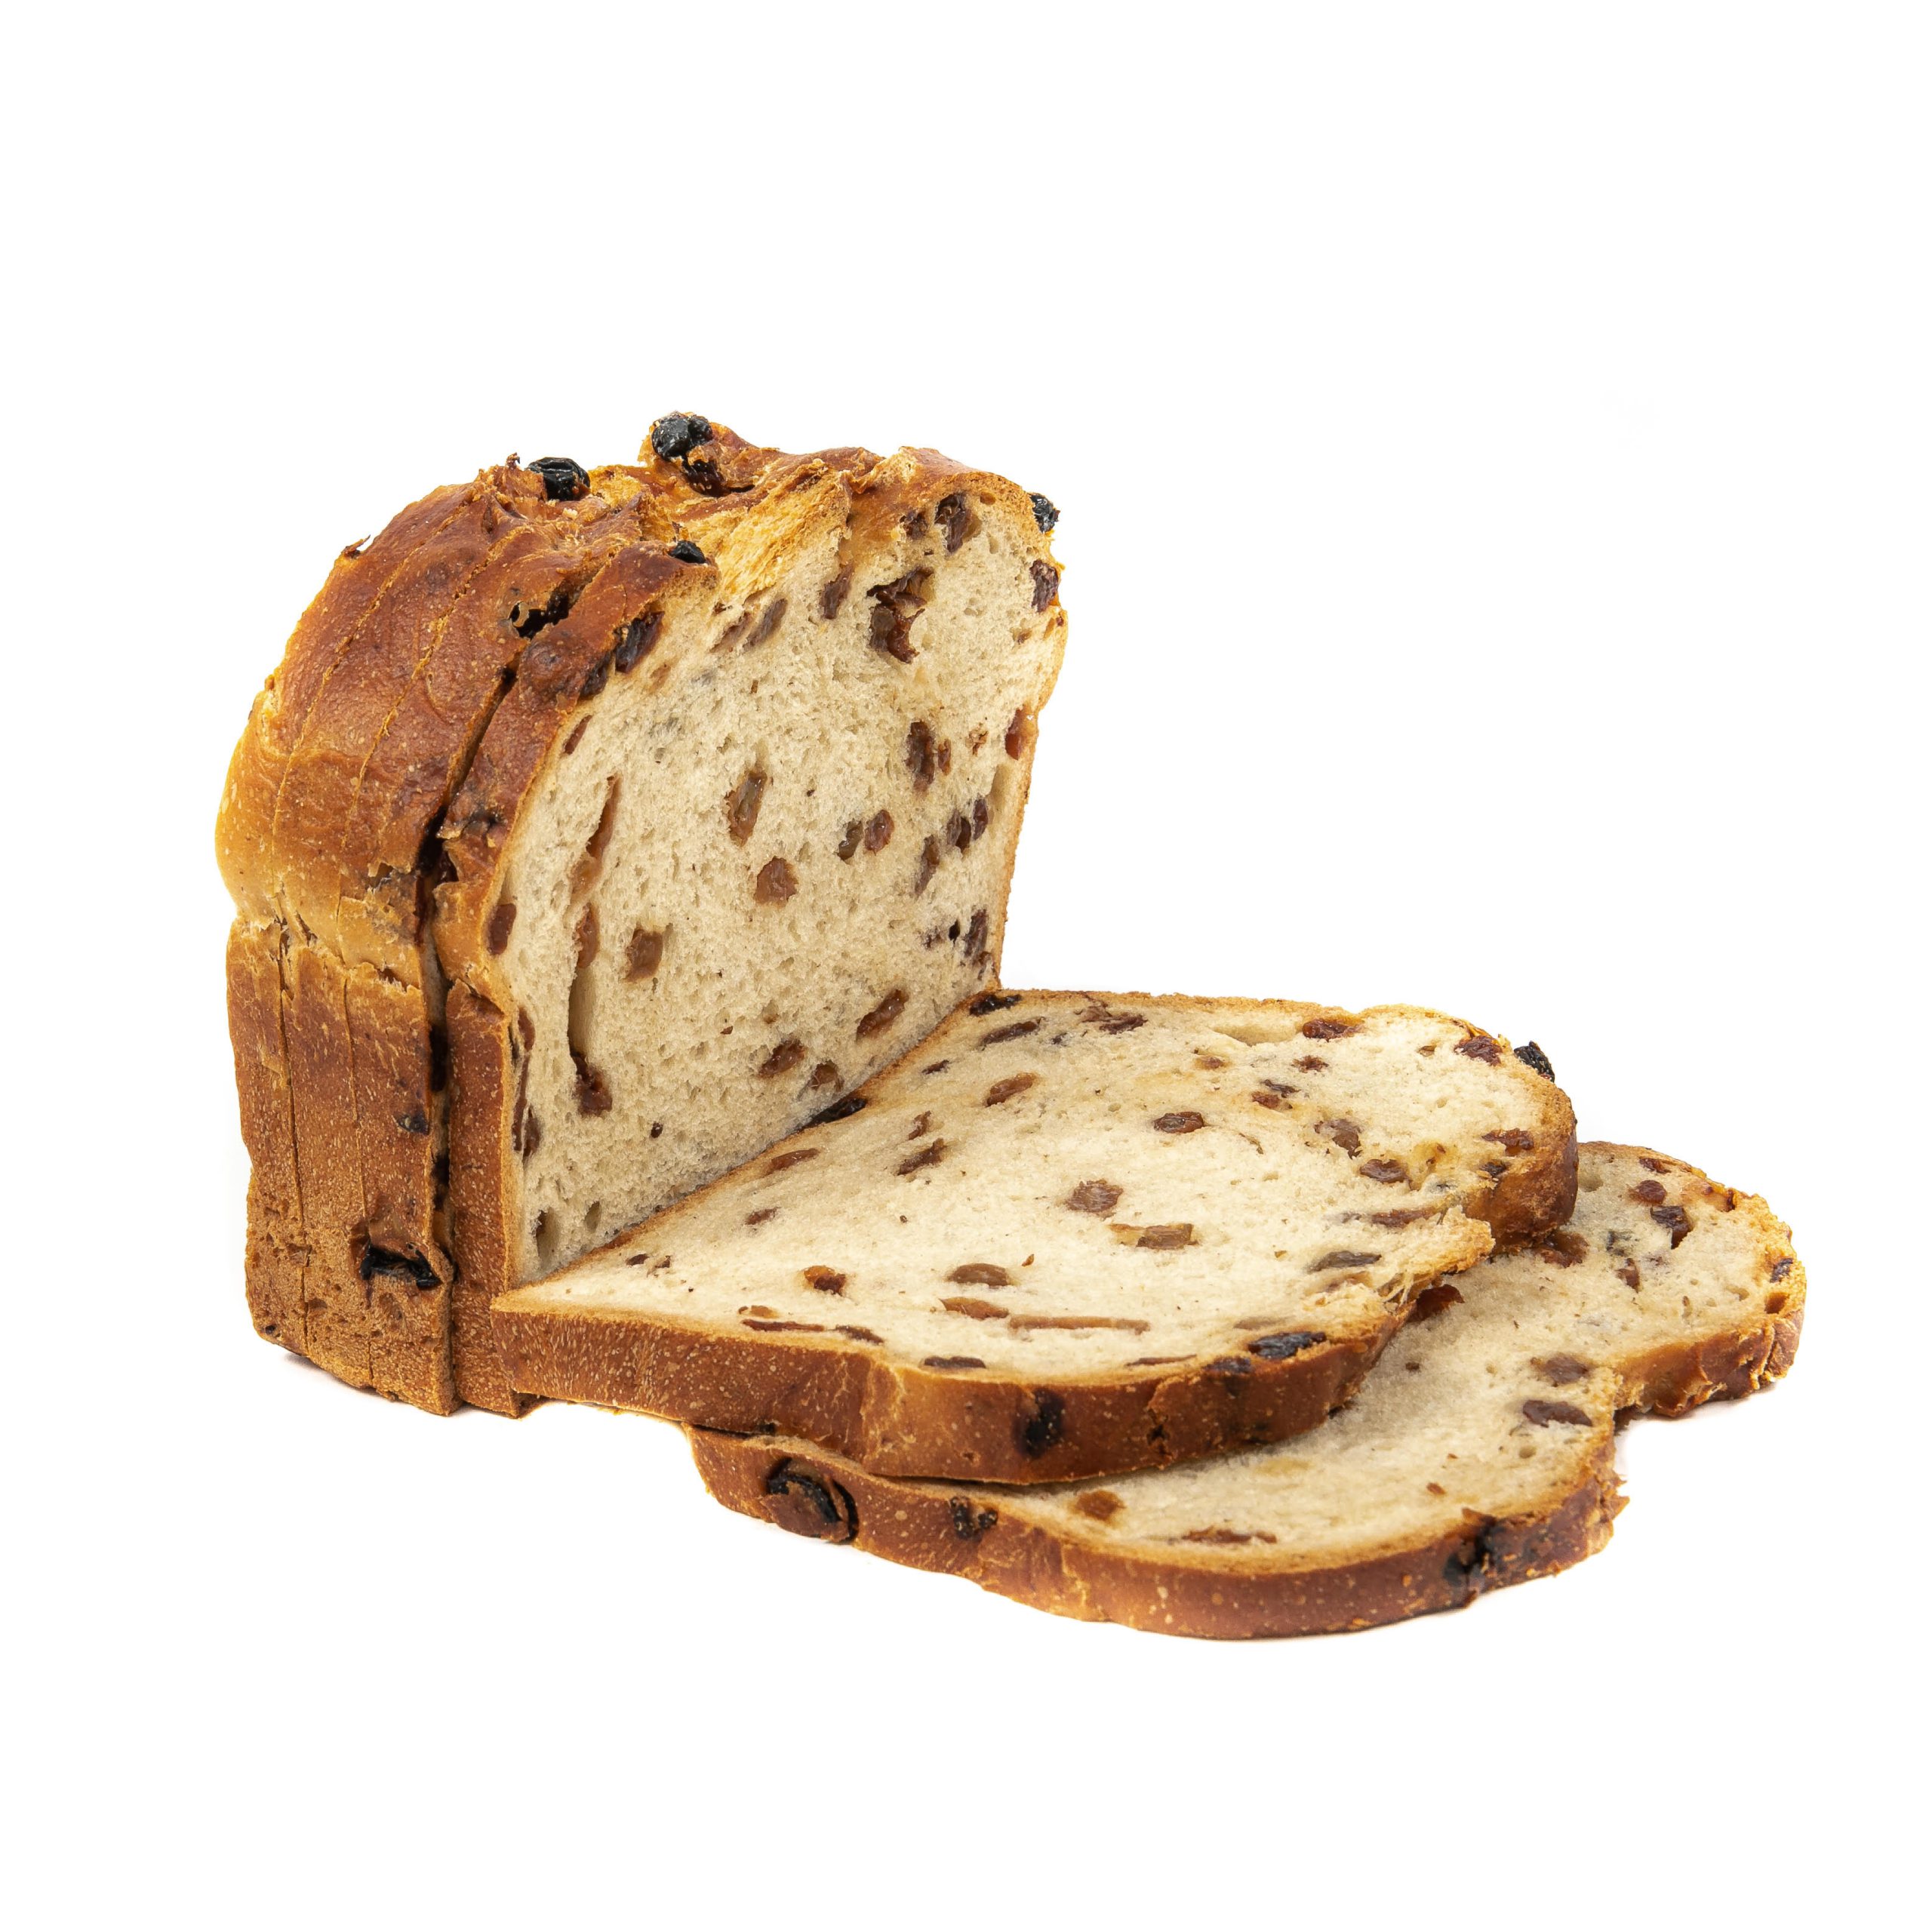 Zoet wit brood met Rozijnen Innovation Bakeries